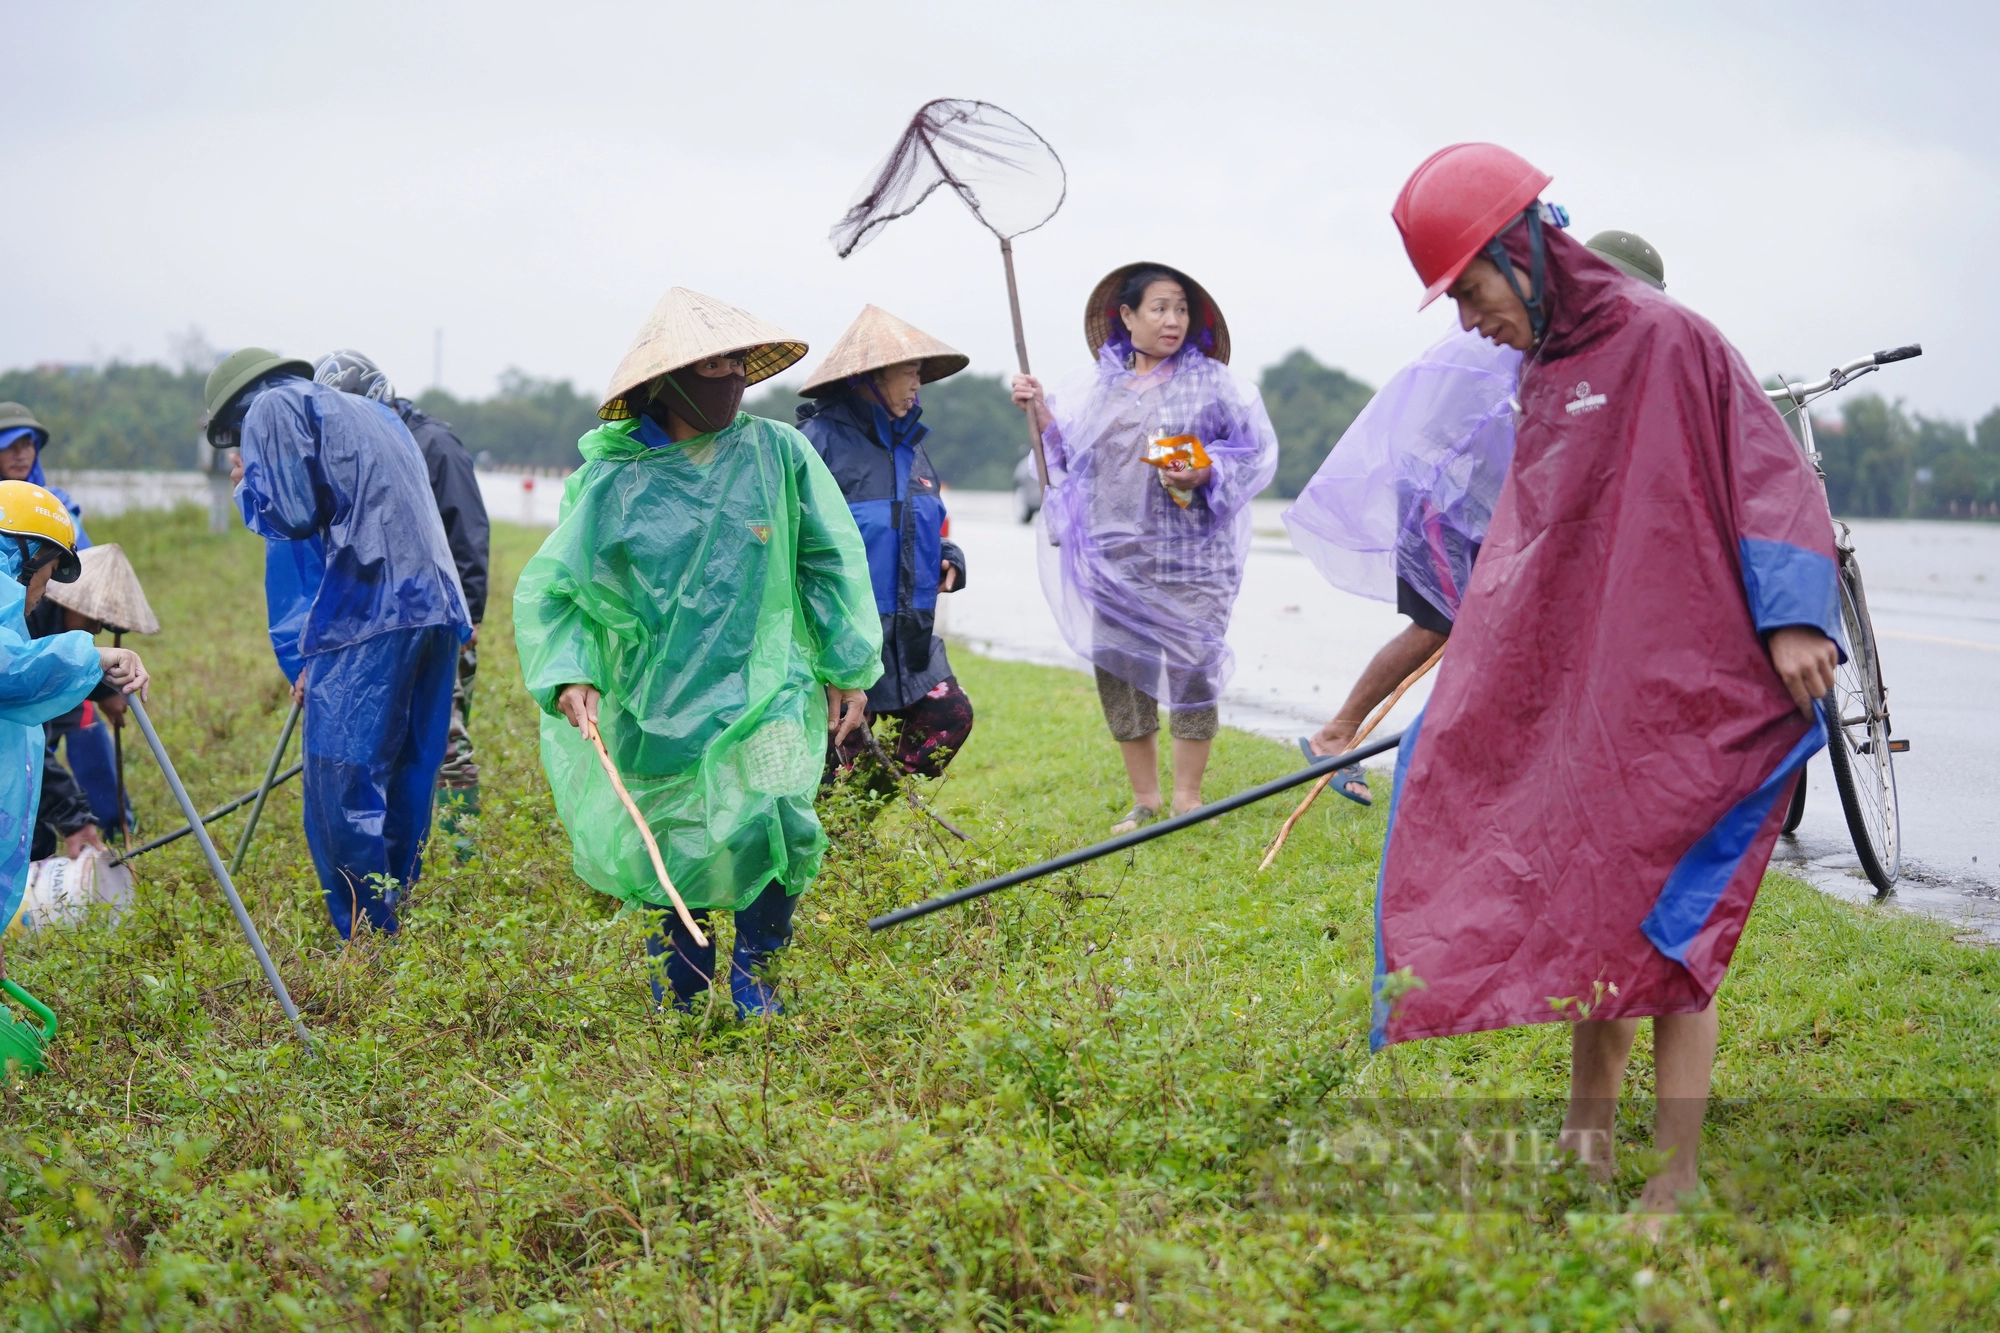 Cả làng ở Hà Tĩnh “đội mưa” cùng nhau lội nước đi bắt chuột bảo vệ mùa màng - Ảnh 5.